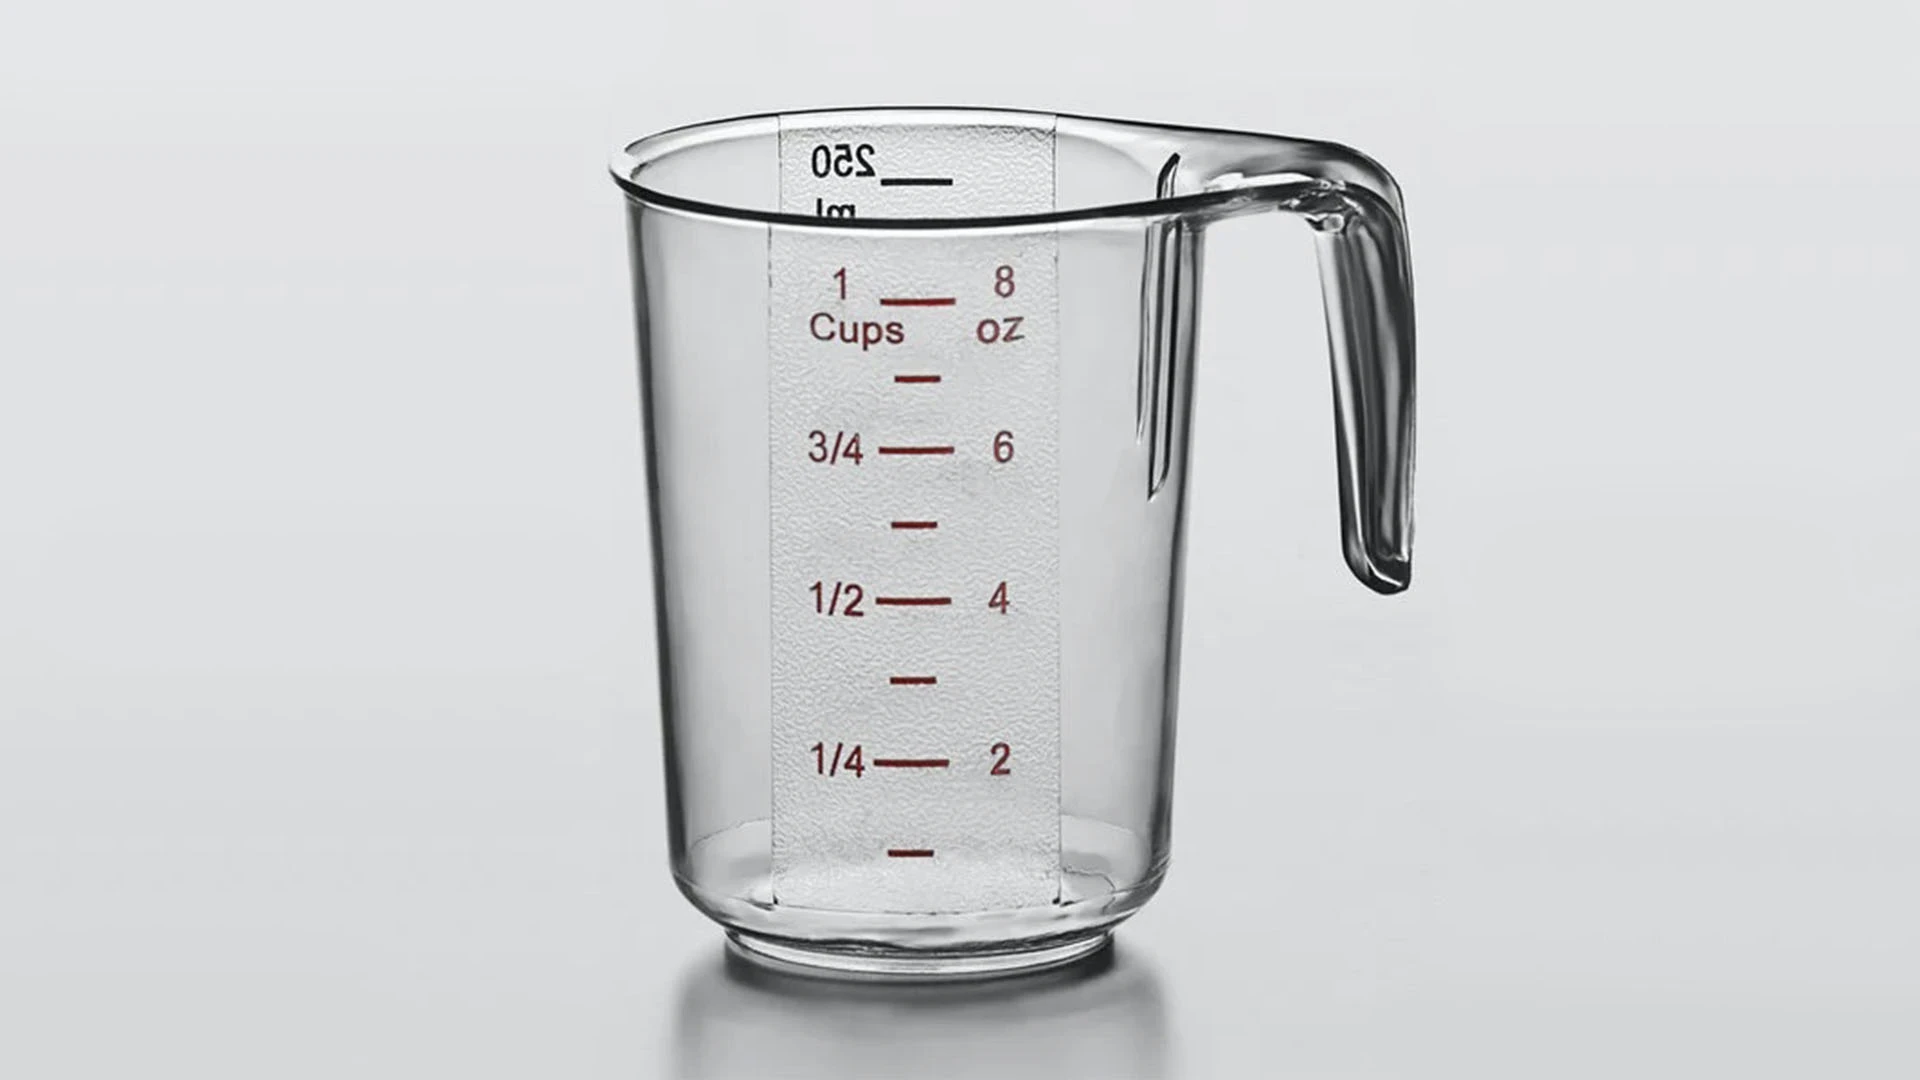 8 fl oz = 236.59 ml (1 cup)